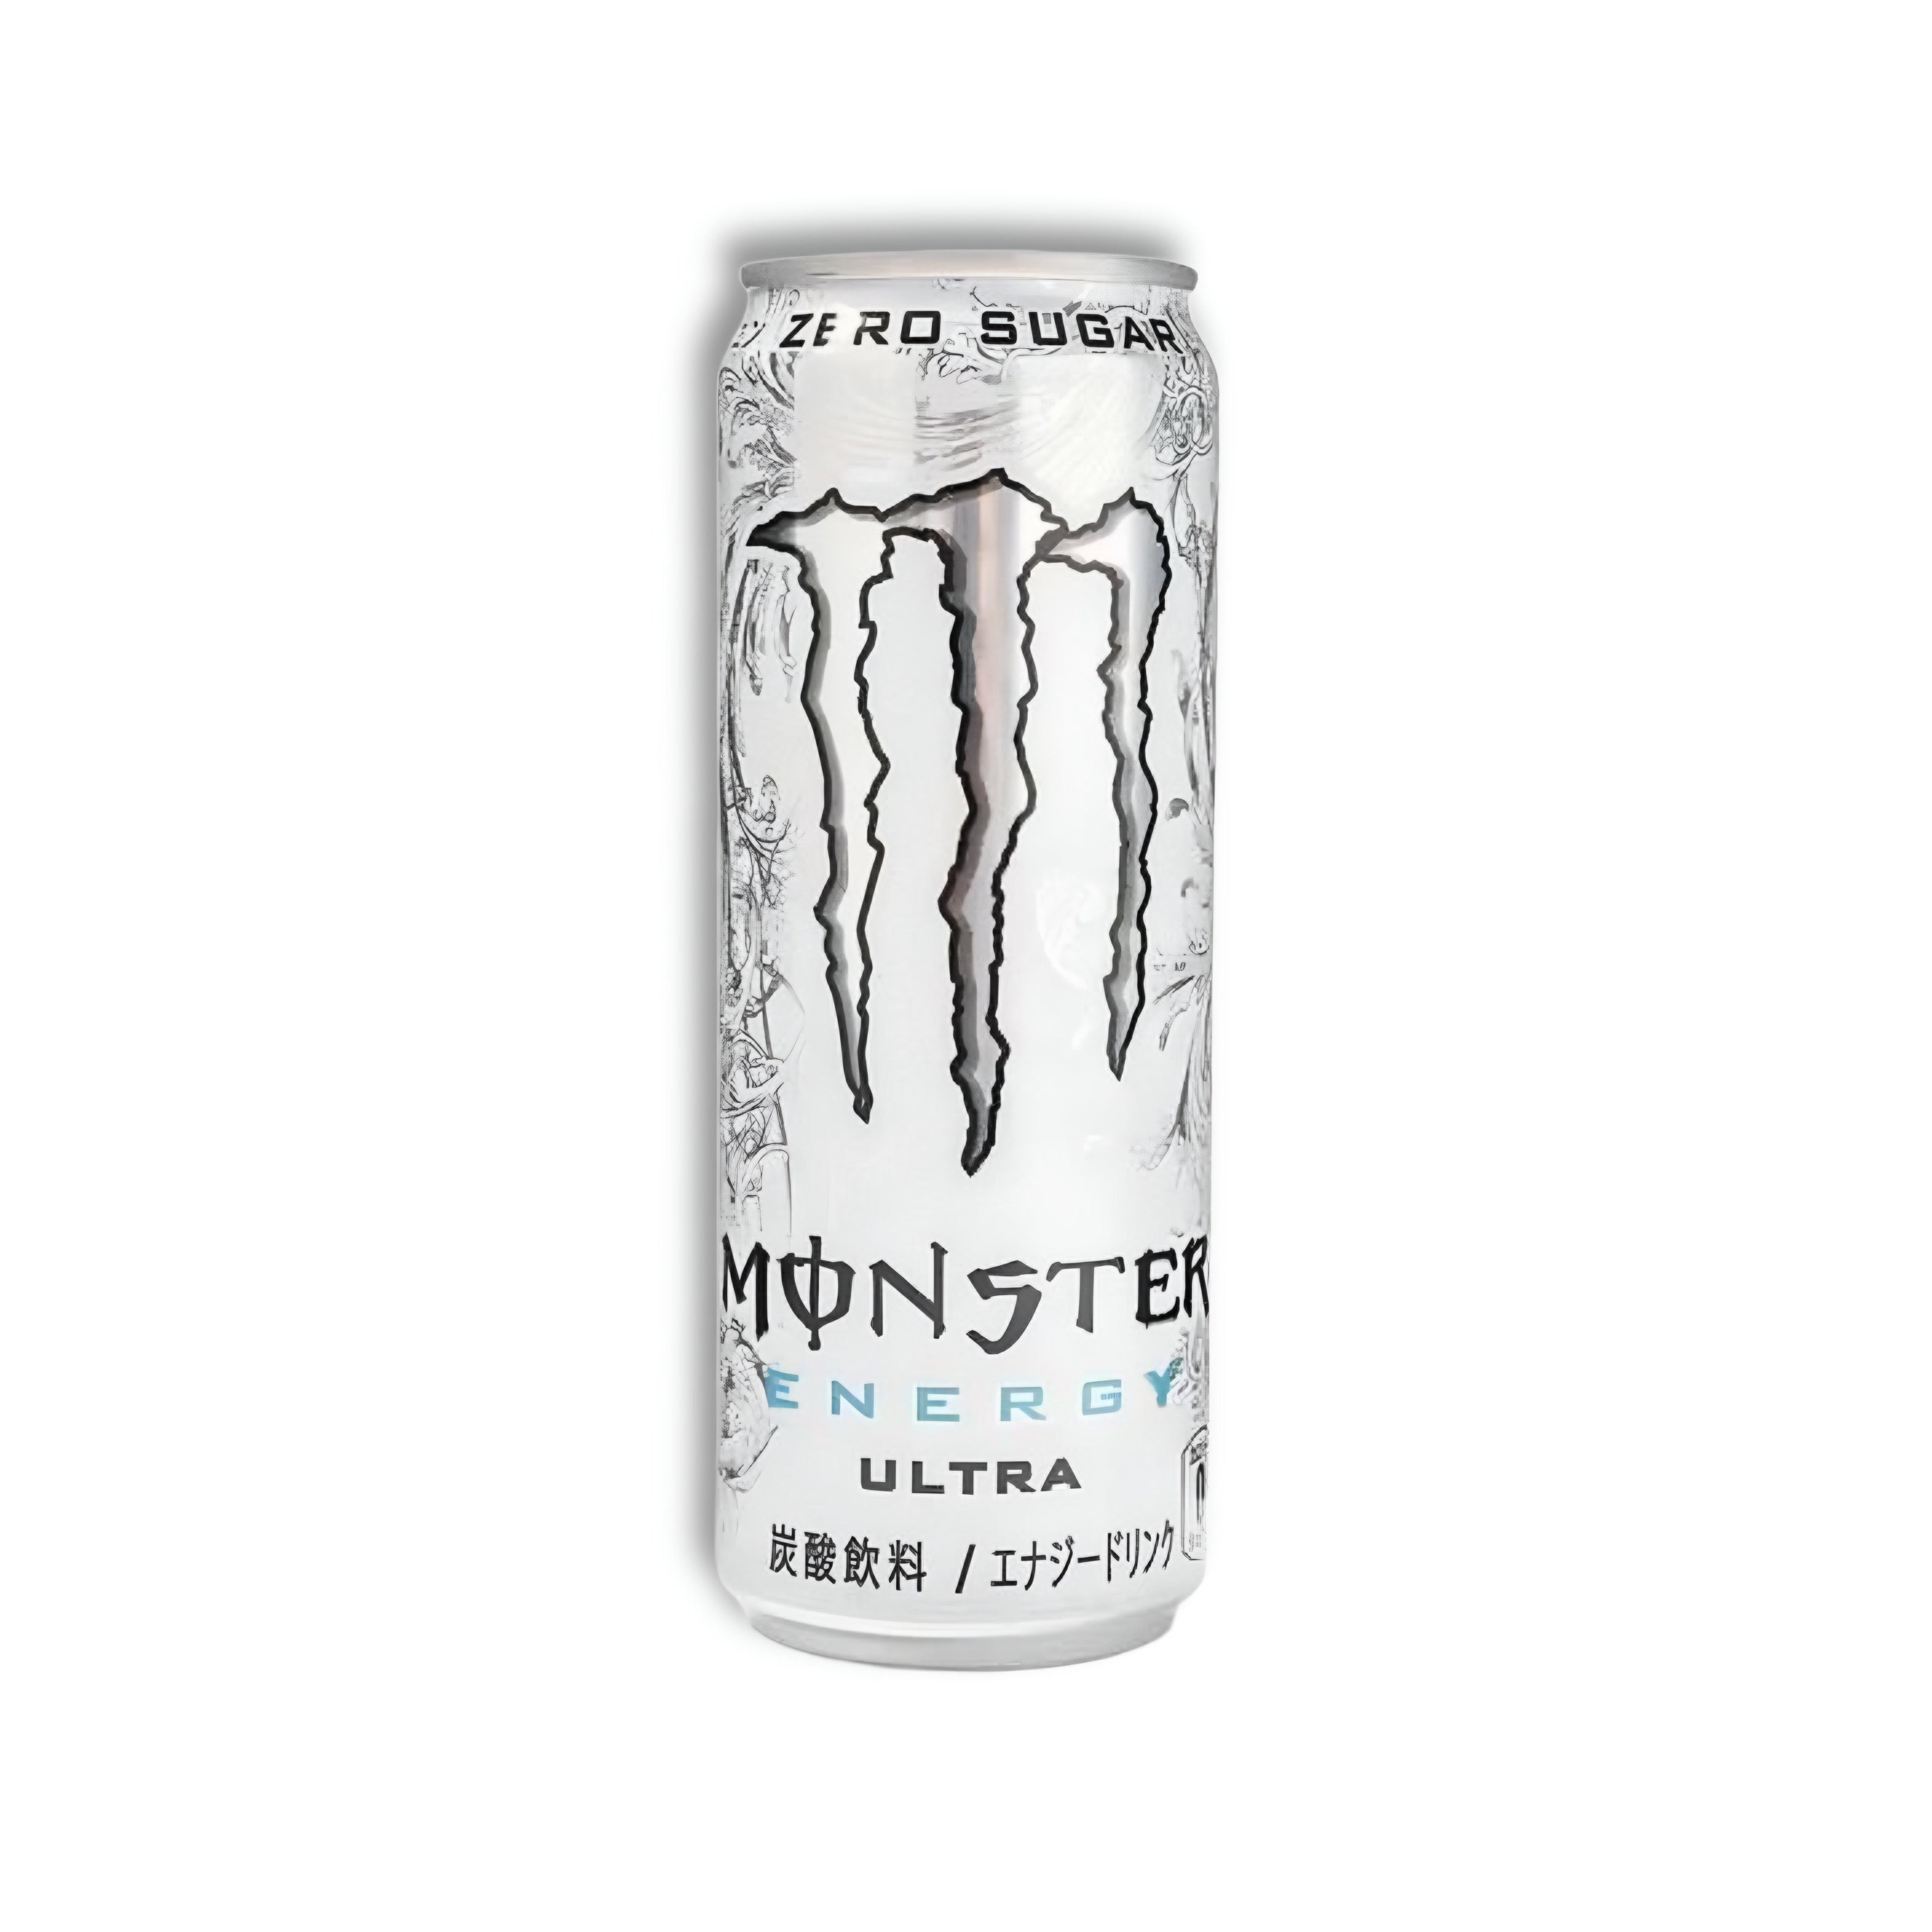 Monster - Ultra White Japan